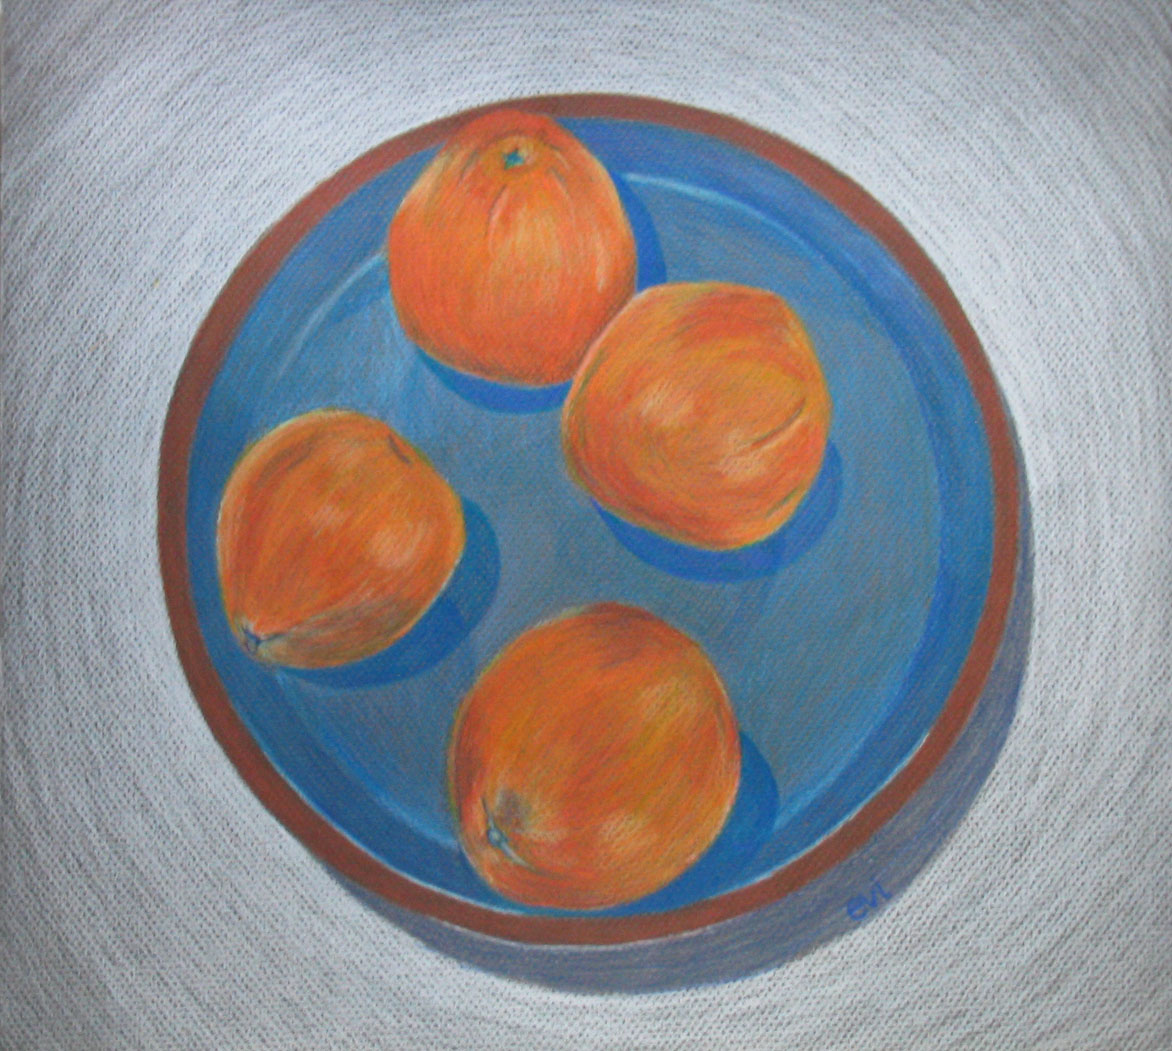 Oranges in a Platter